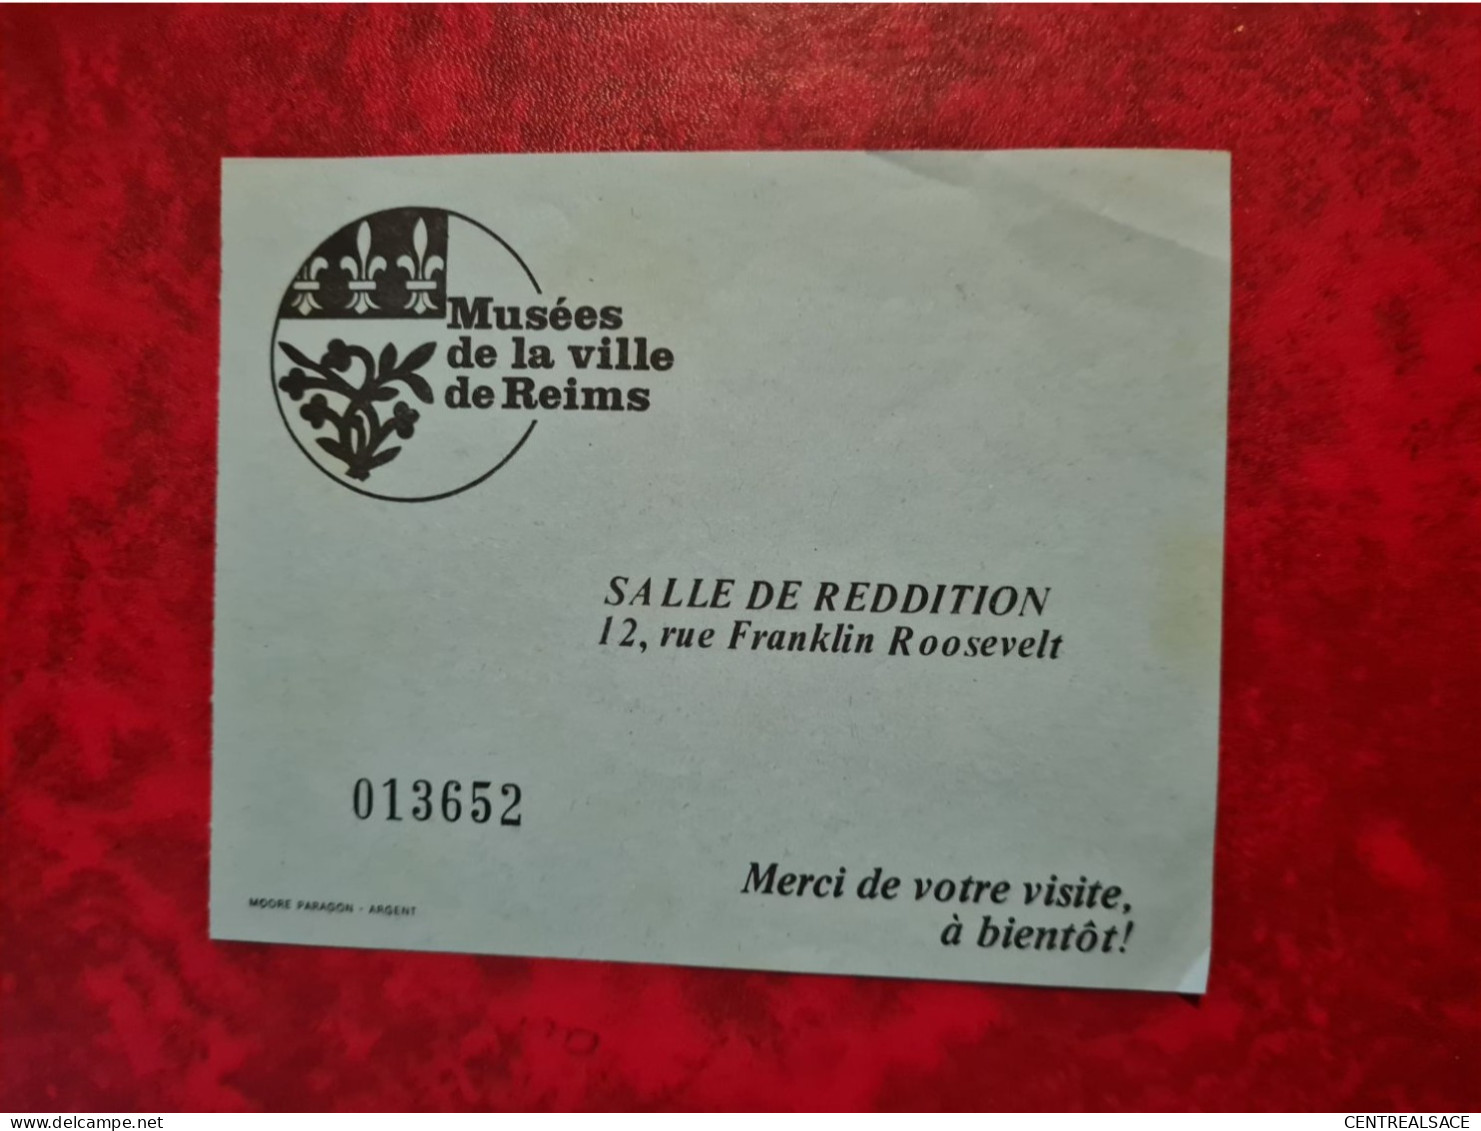 MUSEES DE LA VILLE DE REIMS SALLE DE REDDITION BILLET - Historical Documents